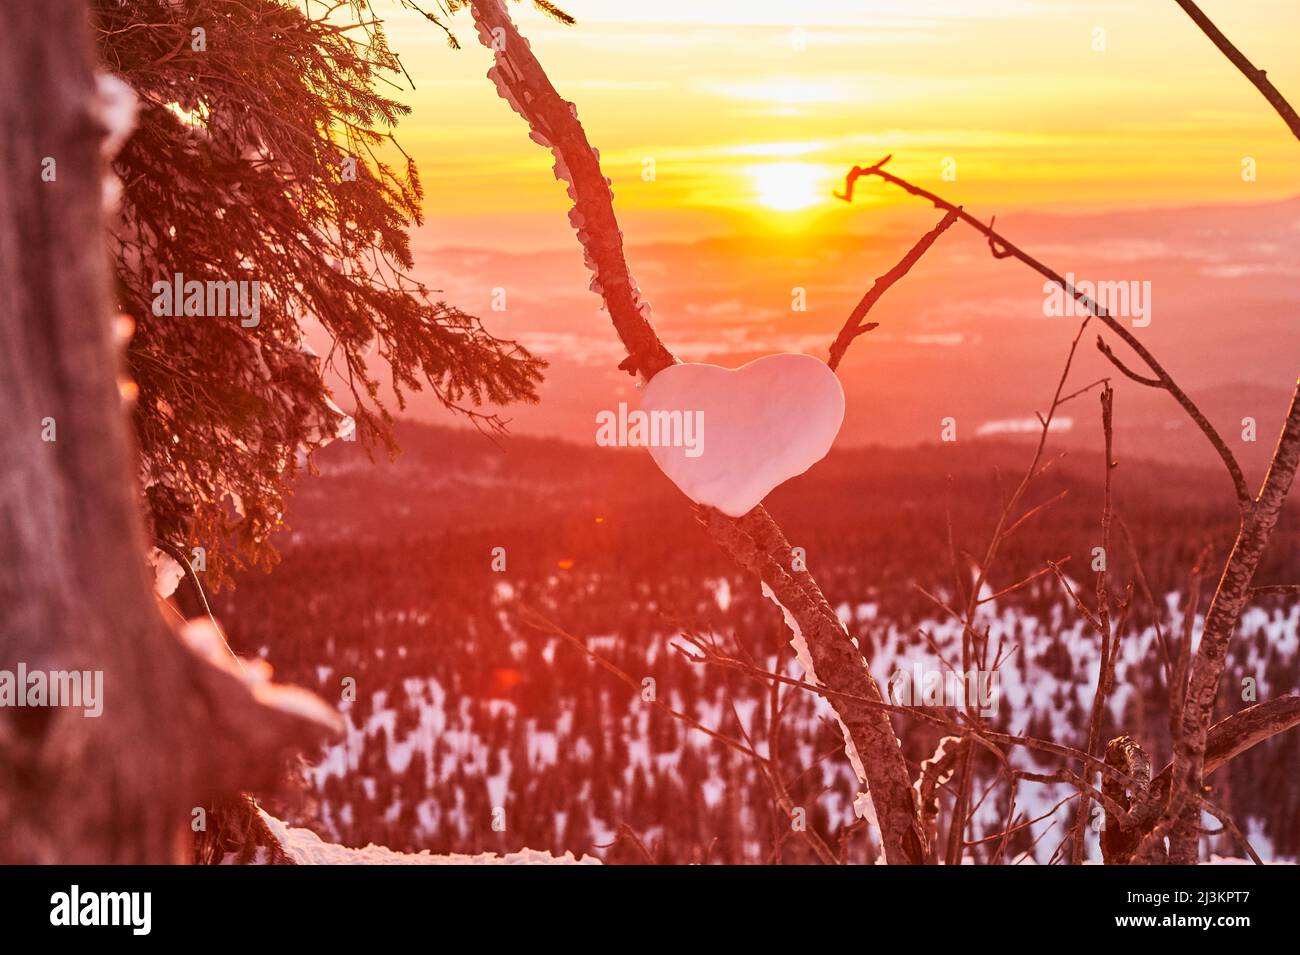 Herzform im Schnee auf einem Ast bei einem golden glühenden Sonnenuntergang auf dem Berg Lusen, Bayerischer Wald; Bayern, Deutschland Stockfoto